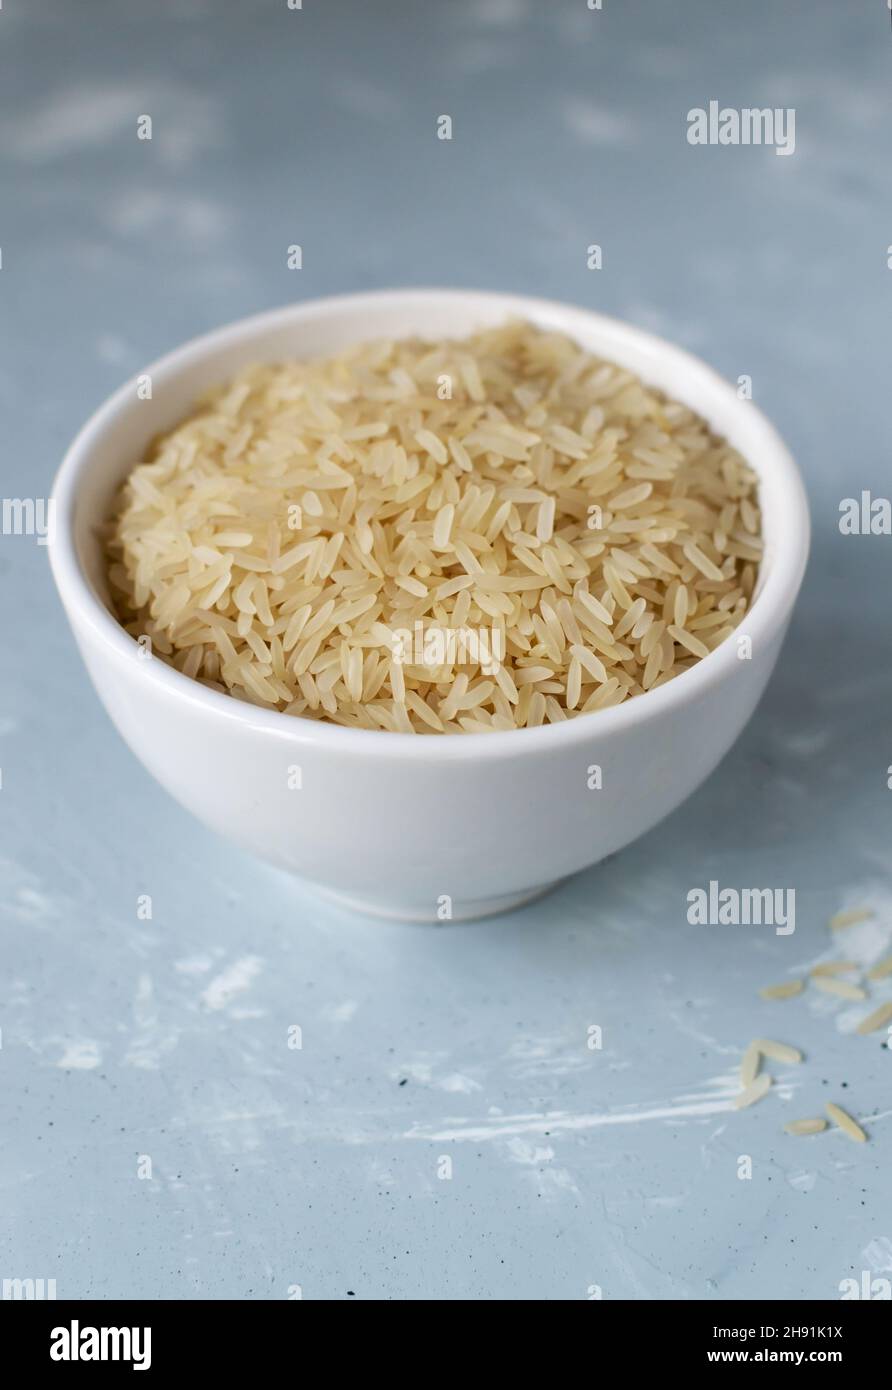 Séchez le riz dans un bol blanc sur fond gris.Concept de saine alimentation.Orientation verticale.Les plats de riz sont cuits dans tous les pays du monde.Pop Banque D'Images